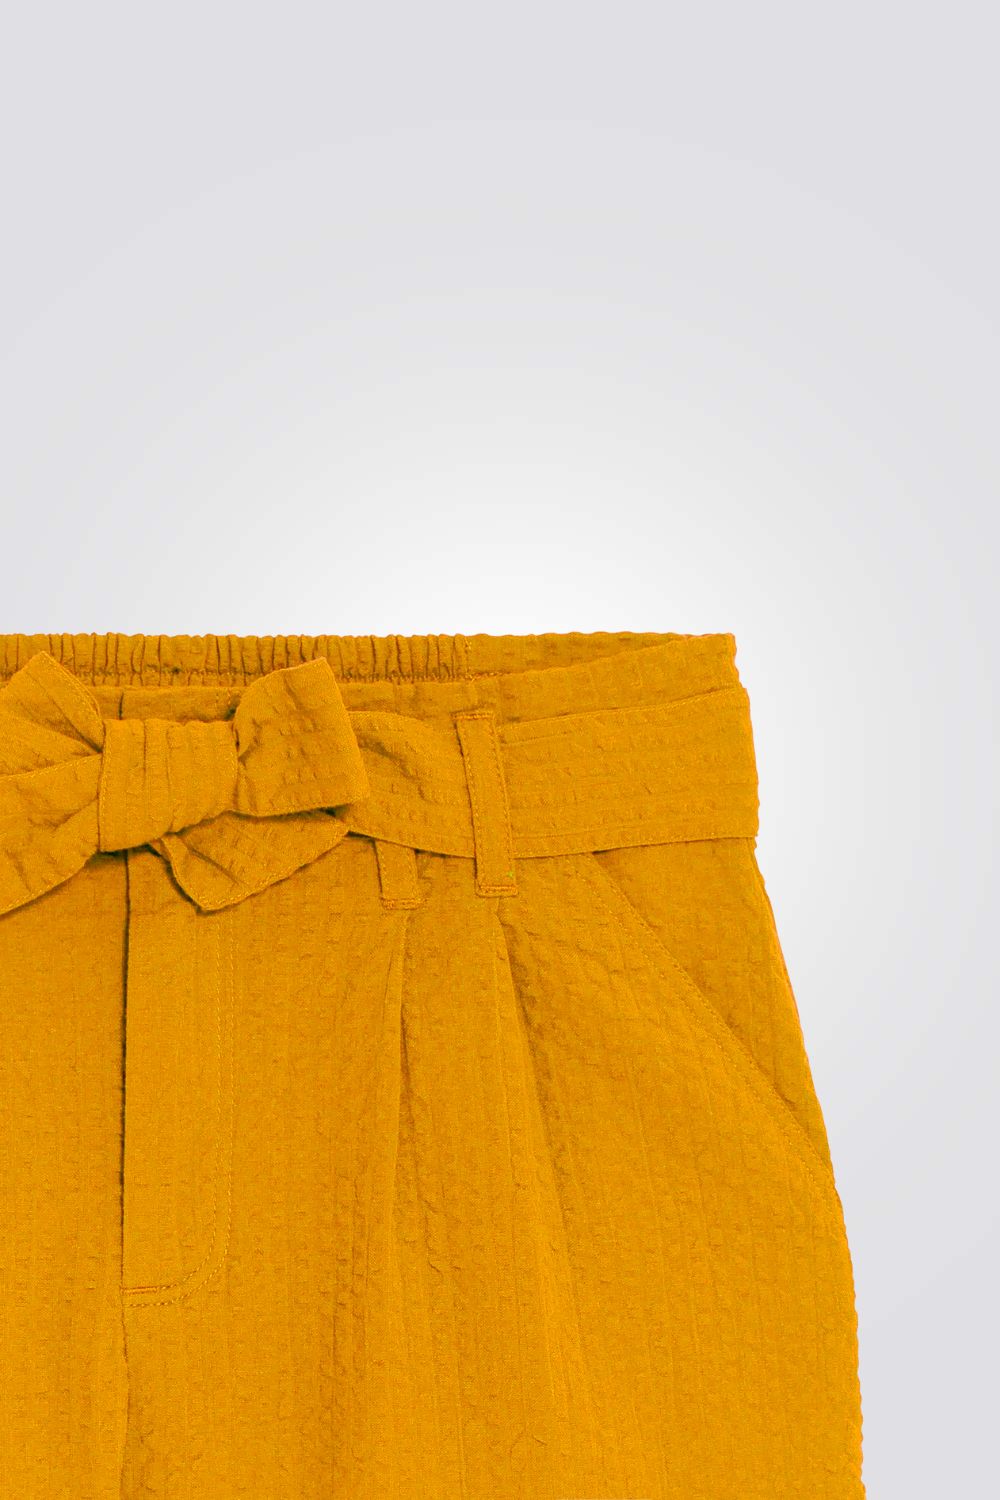 מכנסיים קצרים לילדות בצבע צהוב